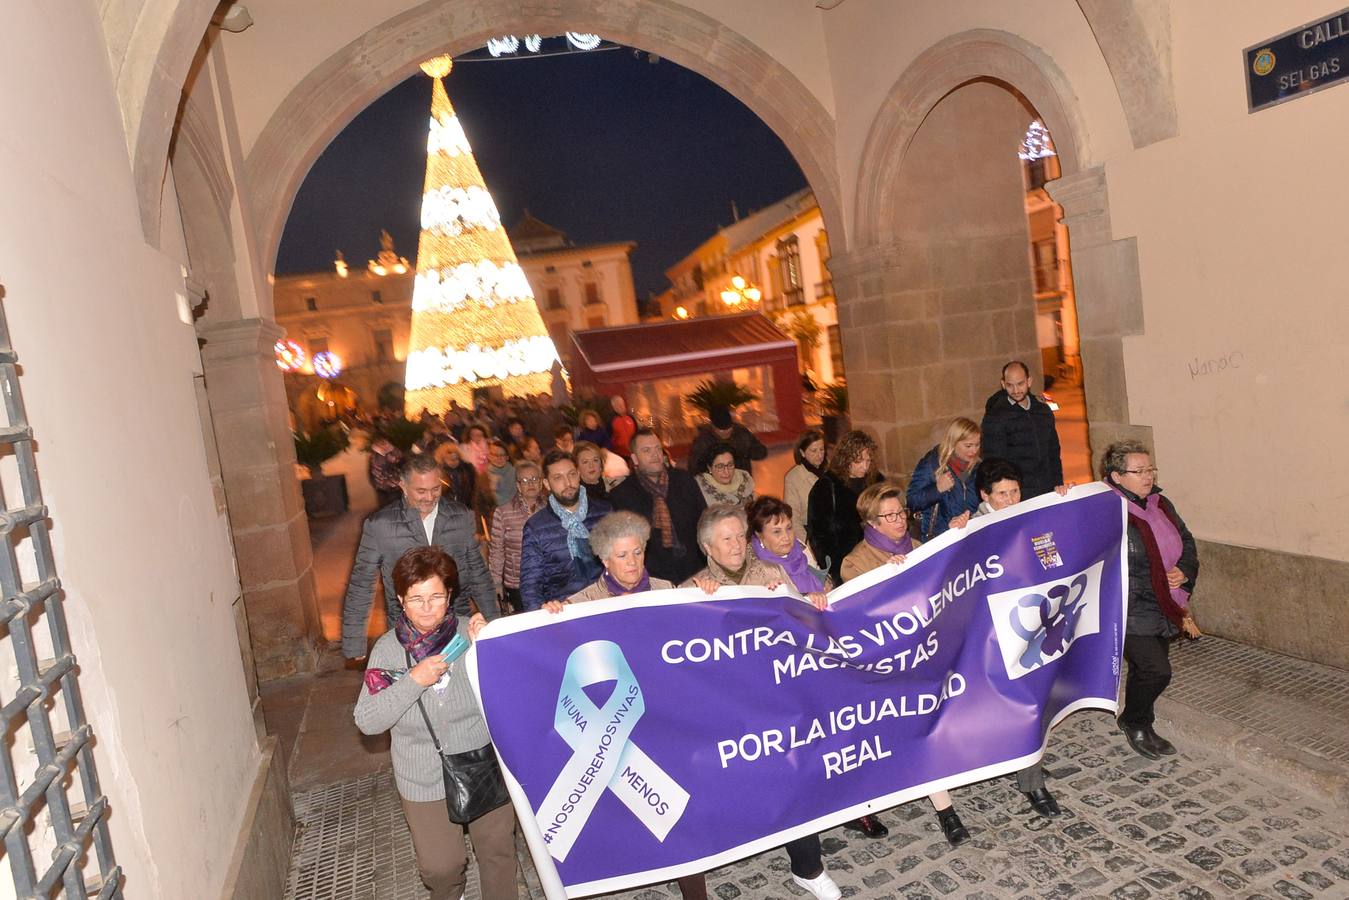 La marcha fue organizada por el Ayuntamiento y la Federación de Organizaciones de Mujeres de Lorca solo unas horas antes. A través de las redes sociales logró duplicar la presencia de asistentes mientras se llevaba a cabo